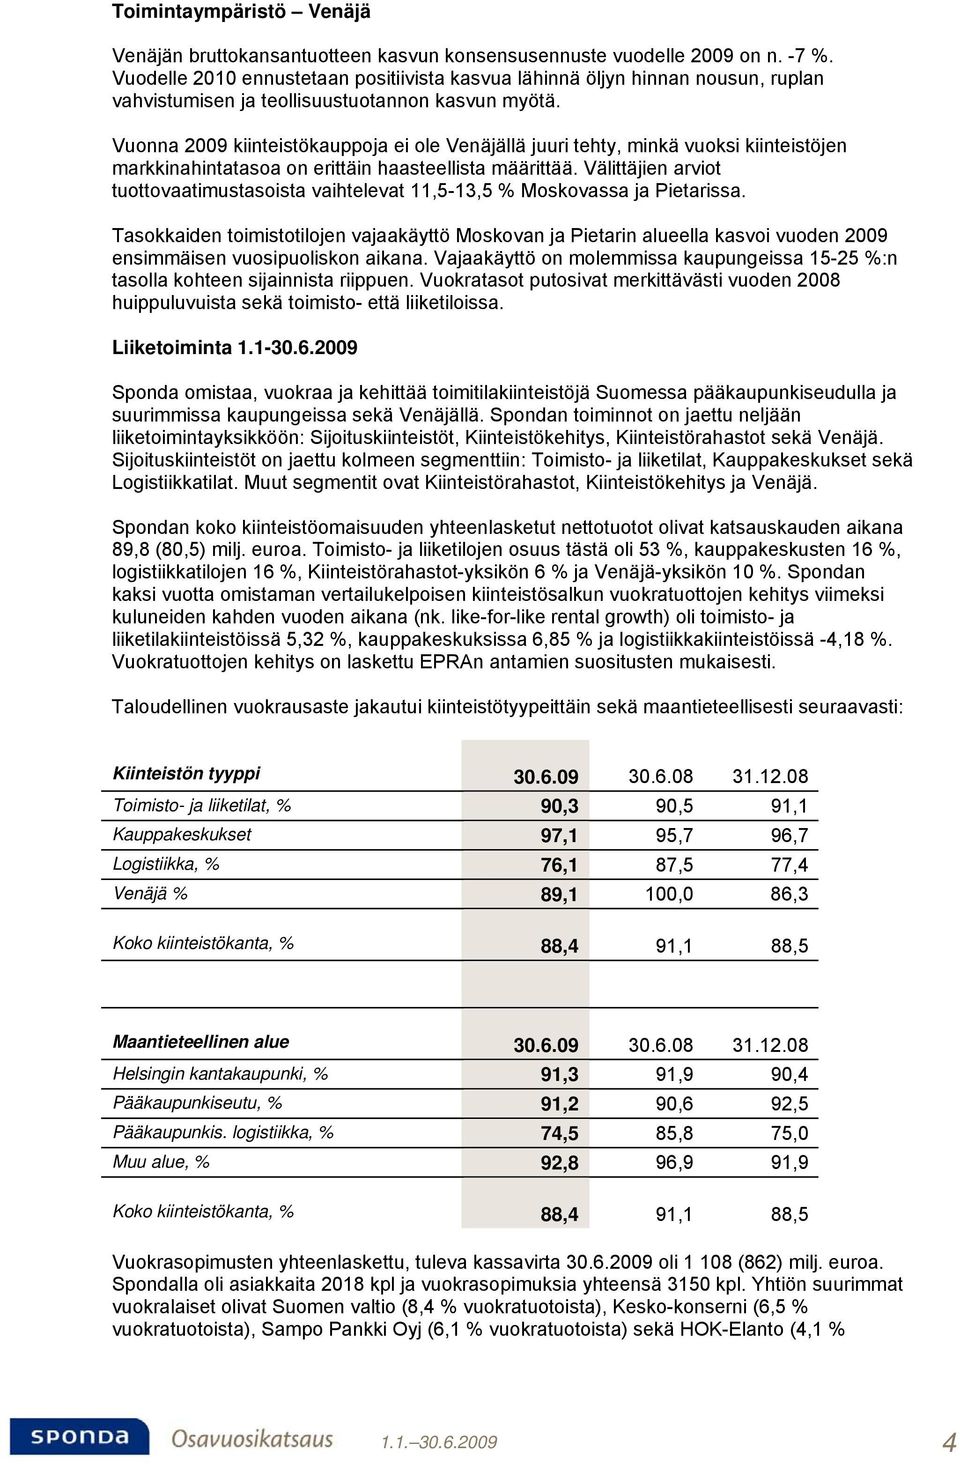 Vuonna 2009 kiinteistökauppoja ei ole Venäjällä juuri tehty, minkä vuoksi kiinteistöjen markkinahintatasoa on erittäin haasteellista määrittää.